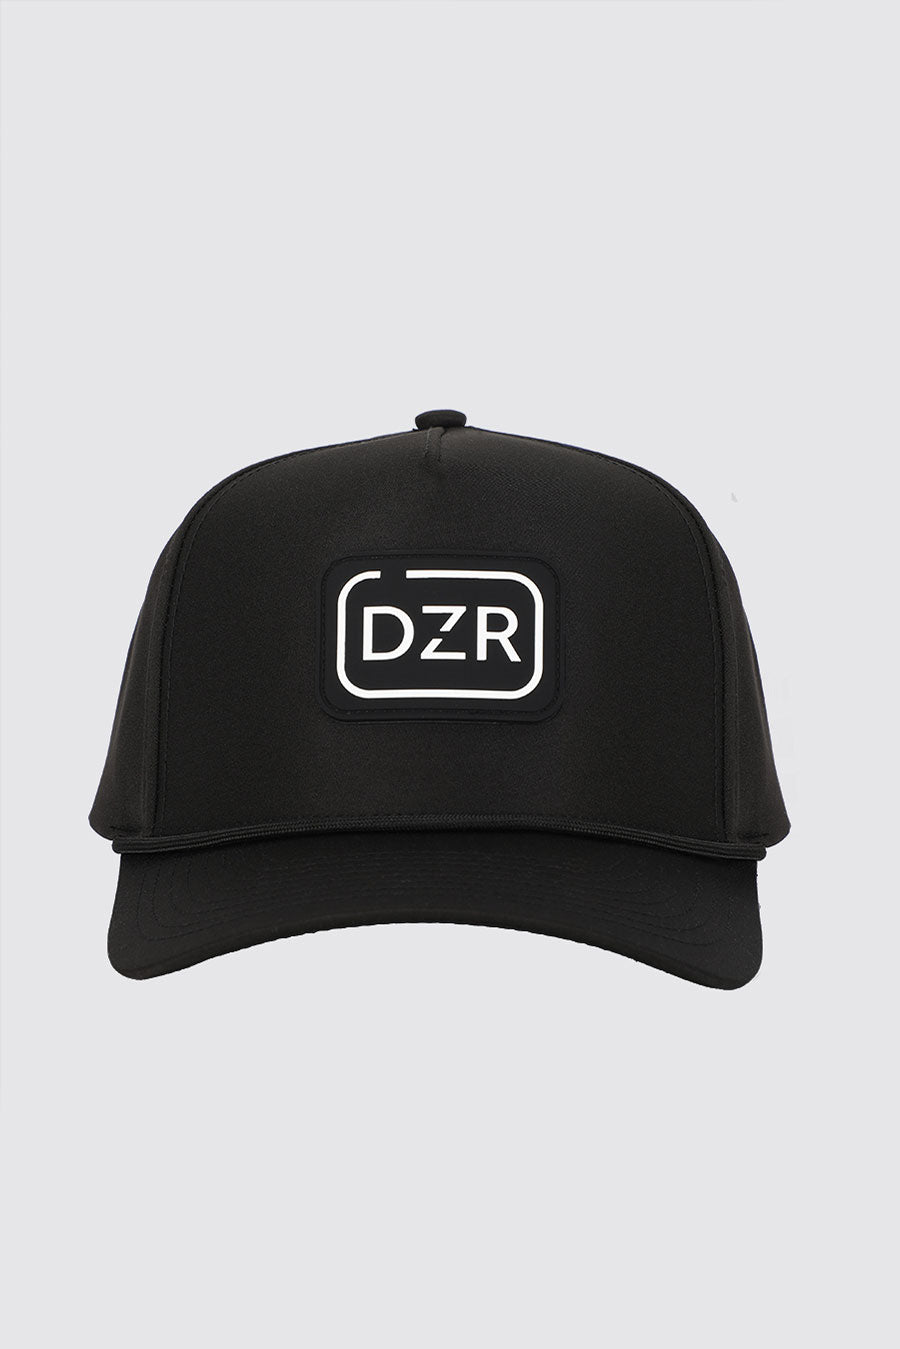 Dozer Dog Range Hat two